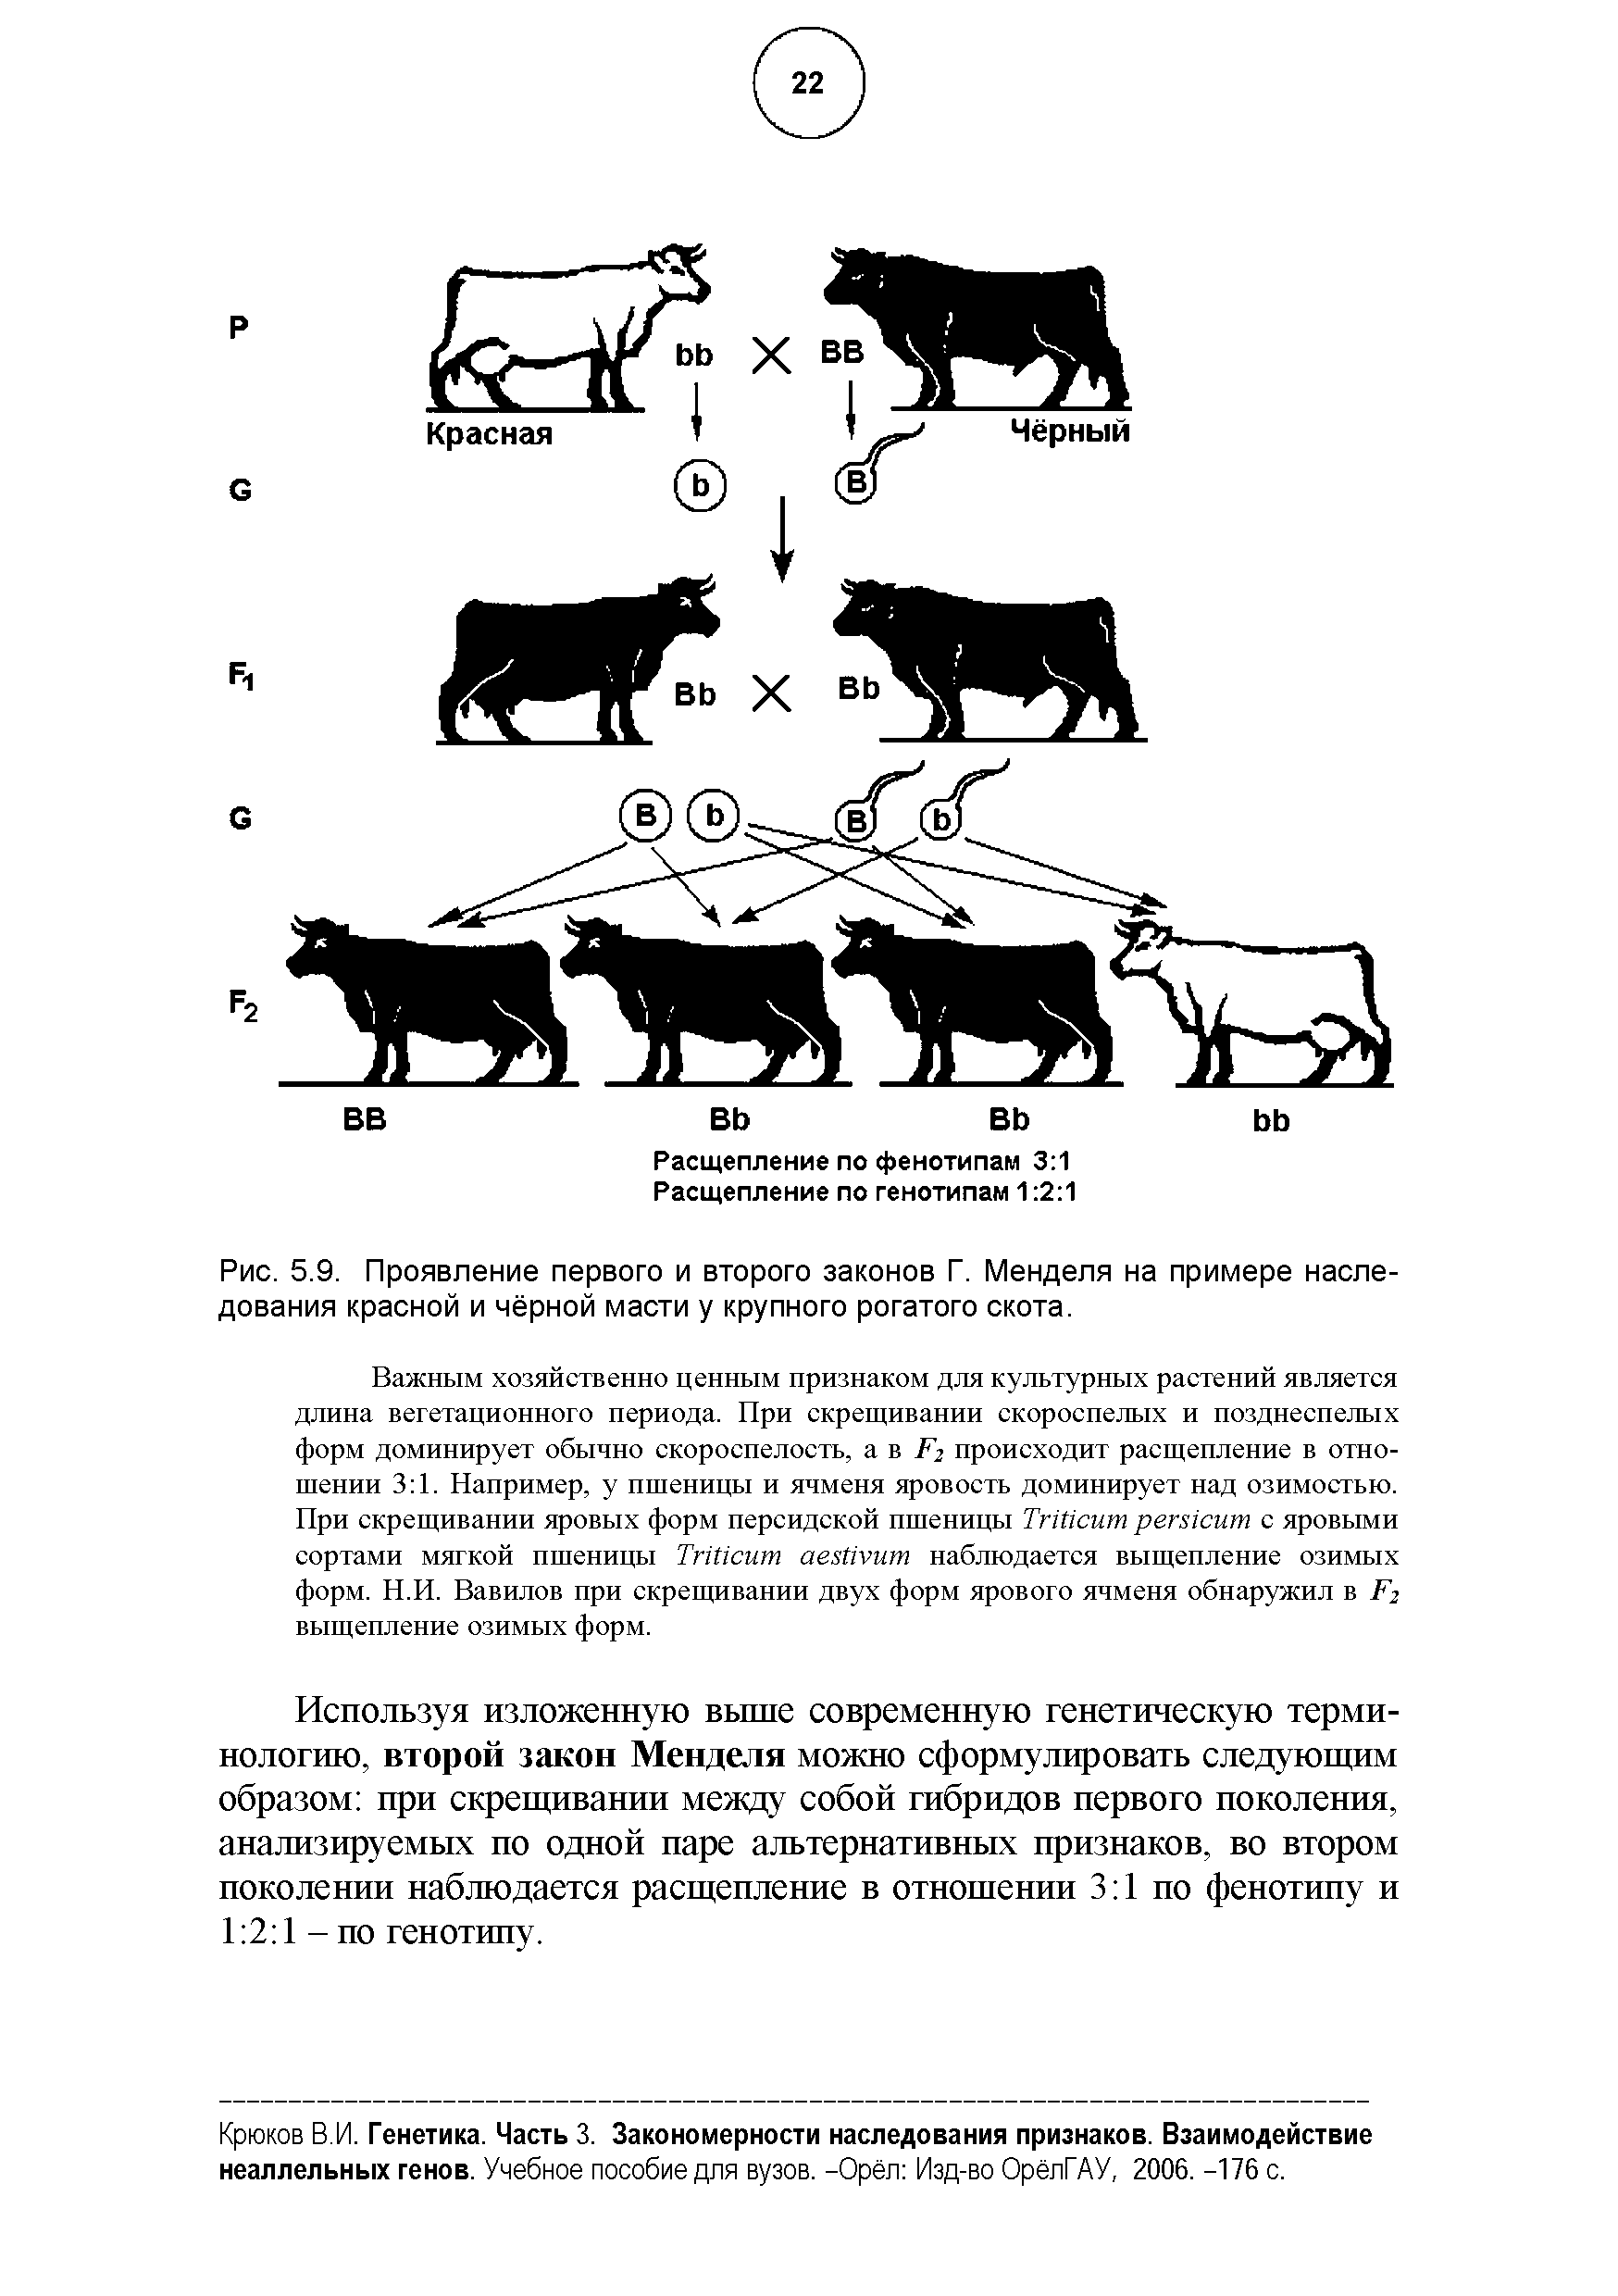 Рис. 5.9. Проявление первого и второго законов Г. Менделя на примере наследования красной и чёрной масти у крупного рогатого скота.